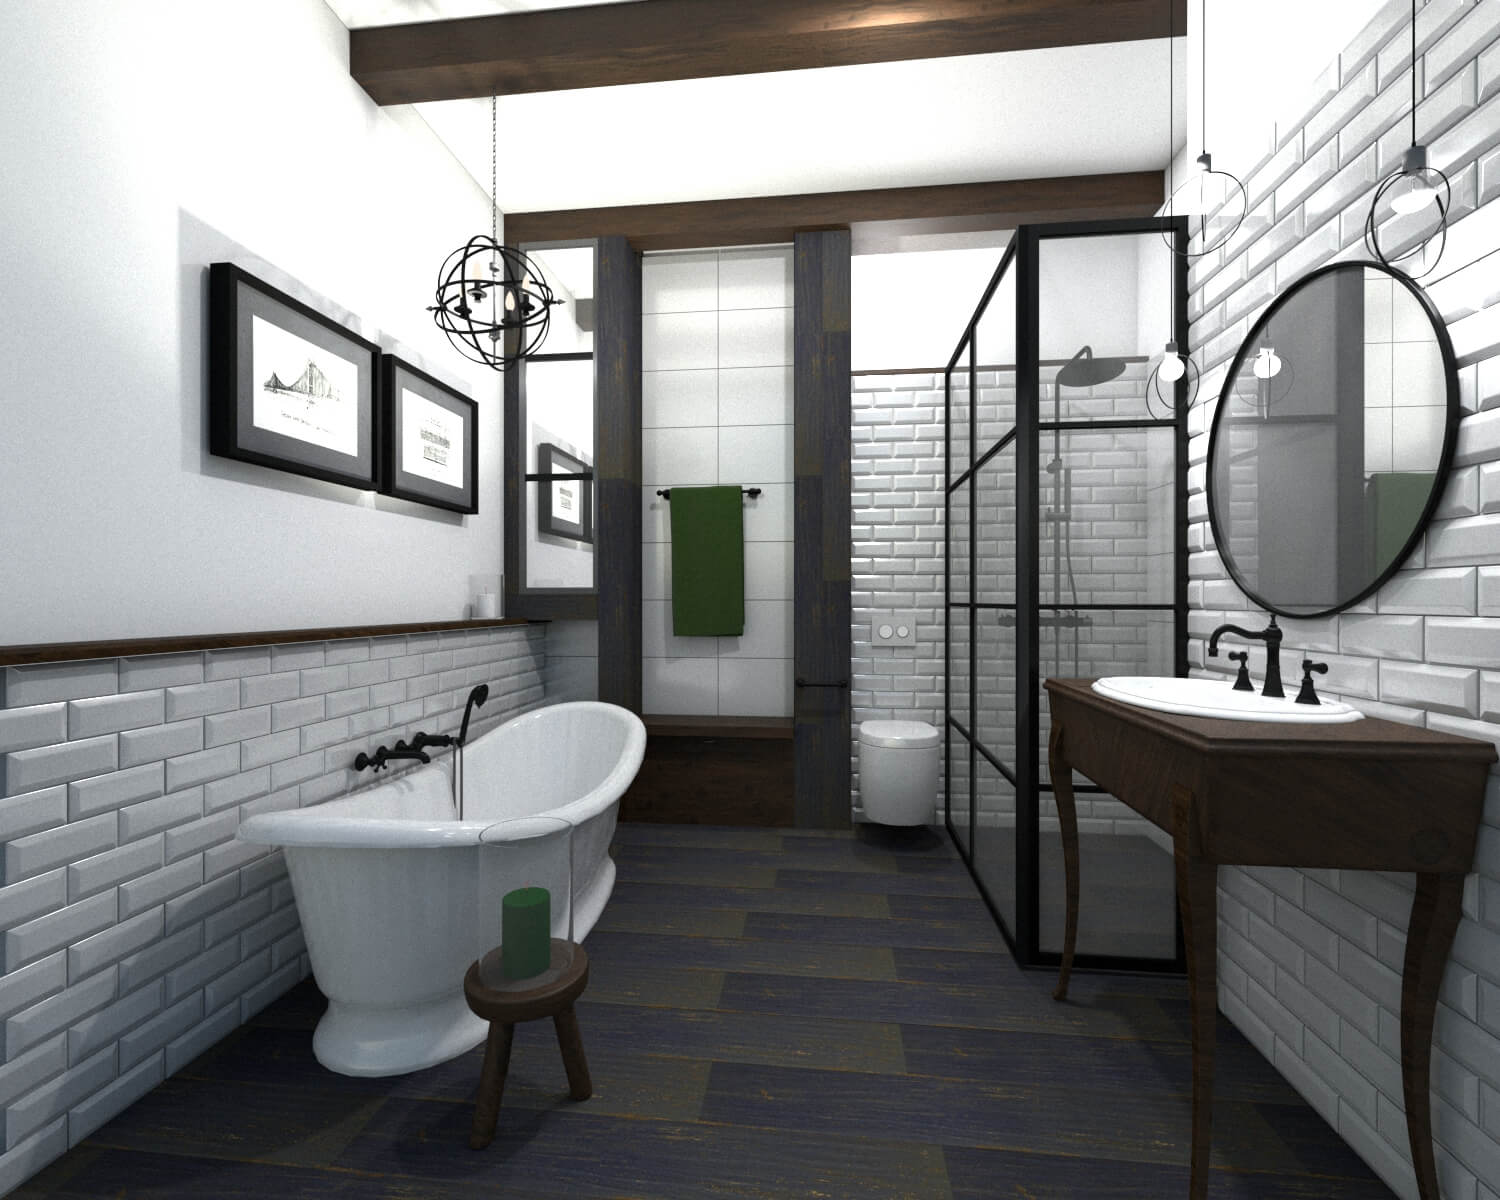 Badezimmer mit Badewanne, Waschtisch und Duschkabine im Vintage-Design